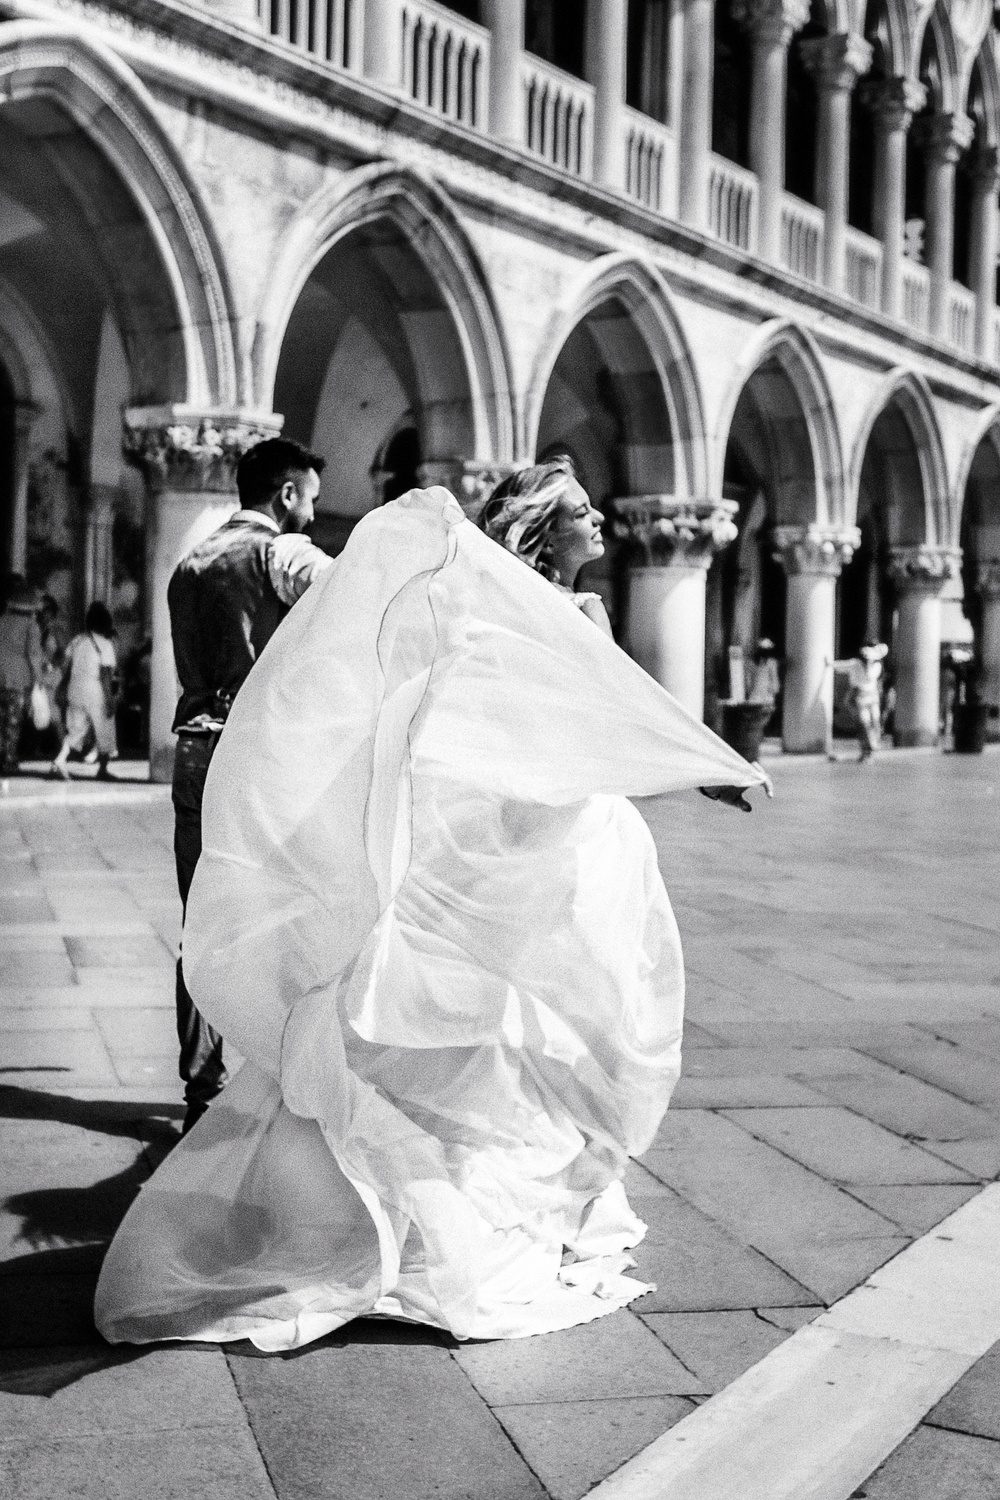 Venice, Italy | Andrey & Nataly